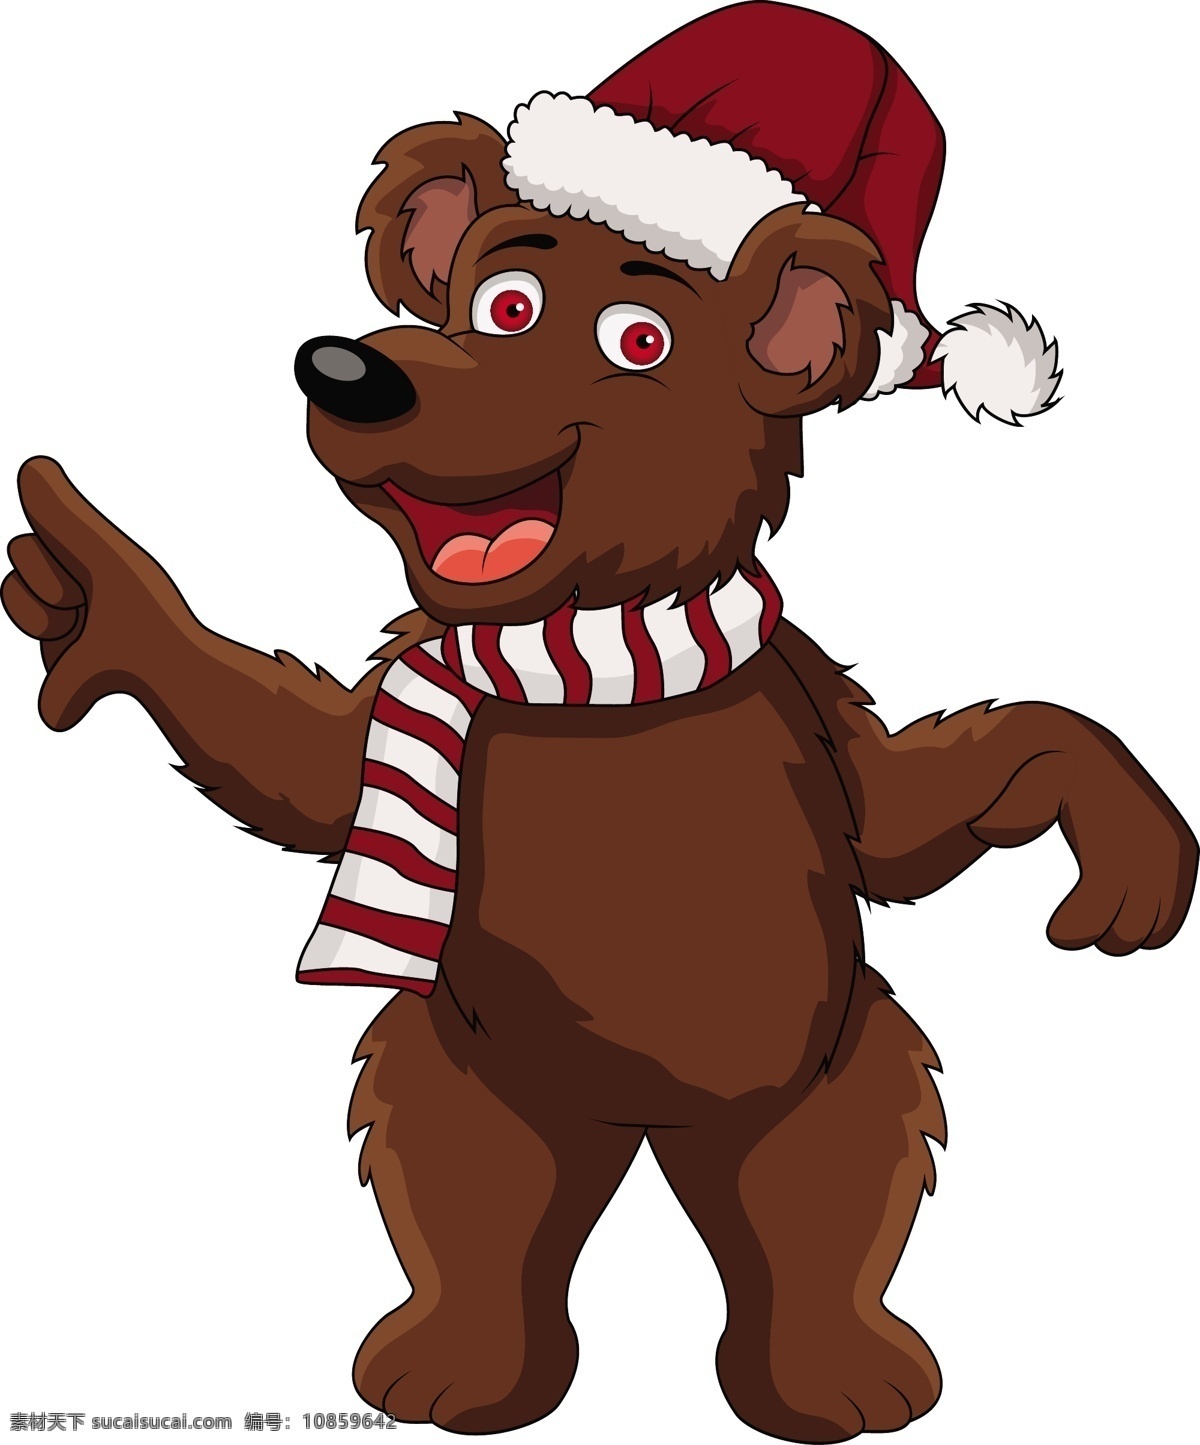 圣诞 熊 生物世界 圣诞帽 玩具熊 野生动物 矢量 模板下载 圣诞熊 泰尼熊 psd源文件